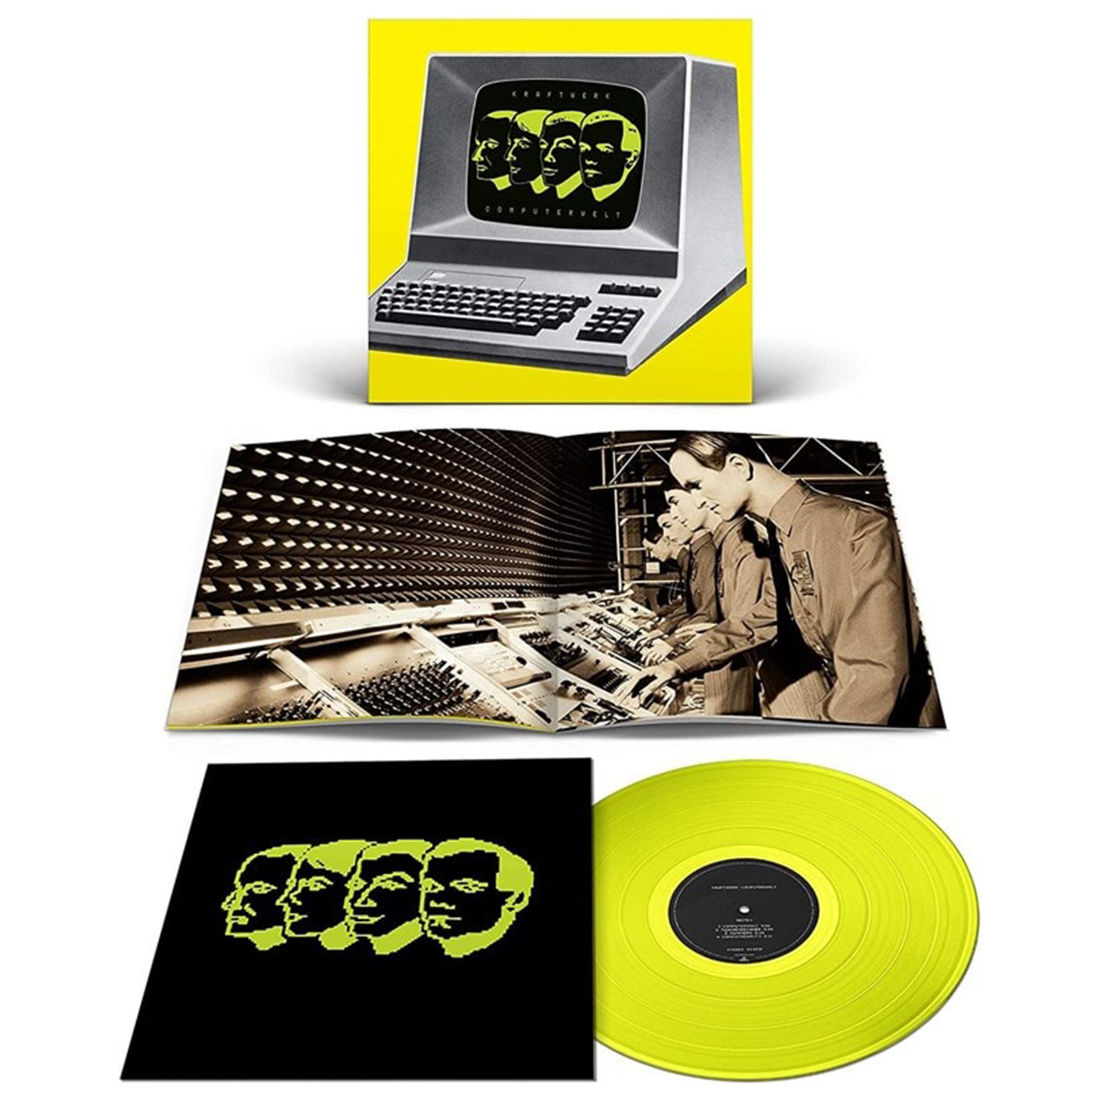 Computerwelt (German Version): Limited Edition Yellow Vinyl LP